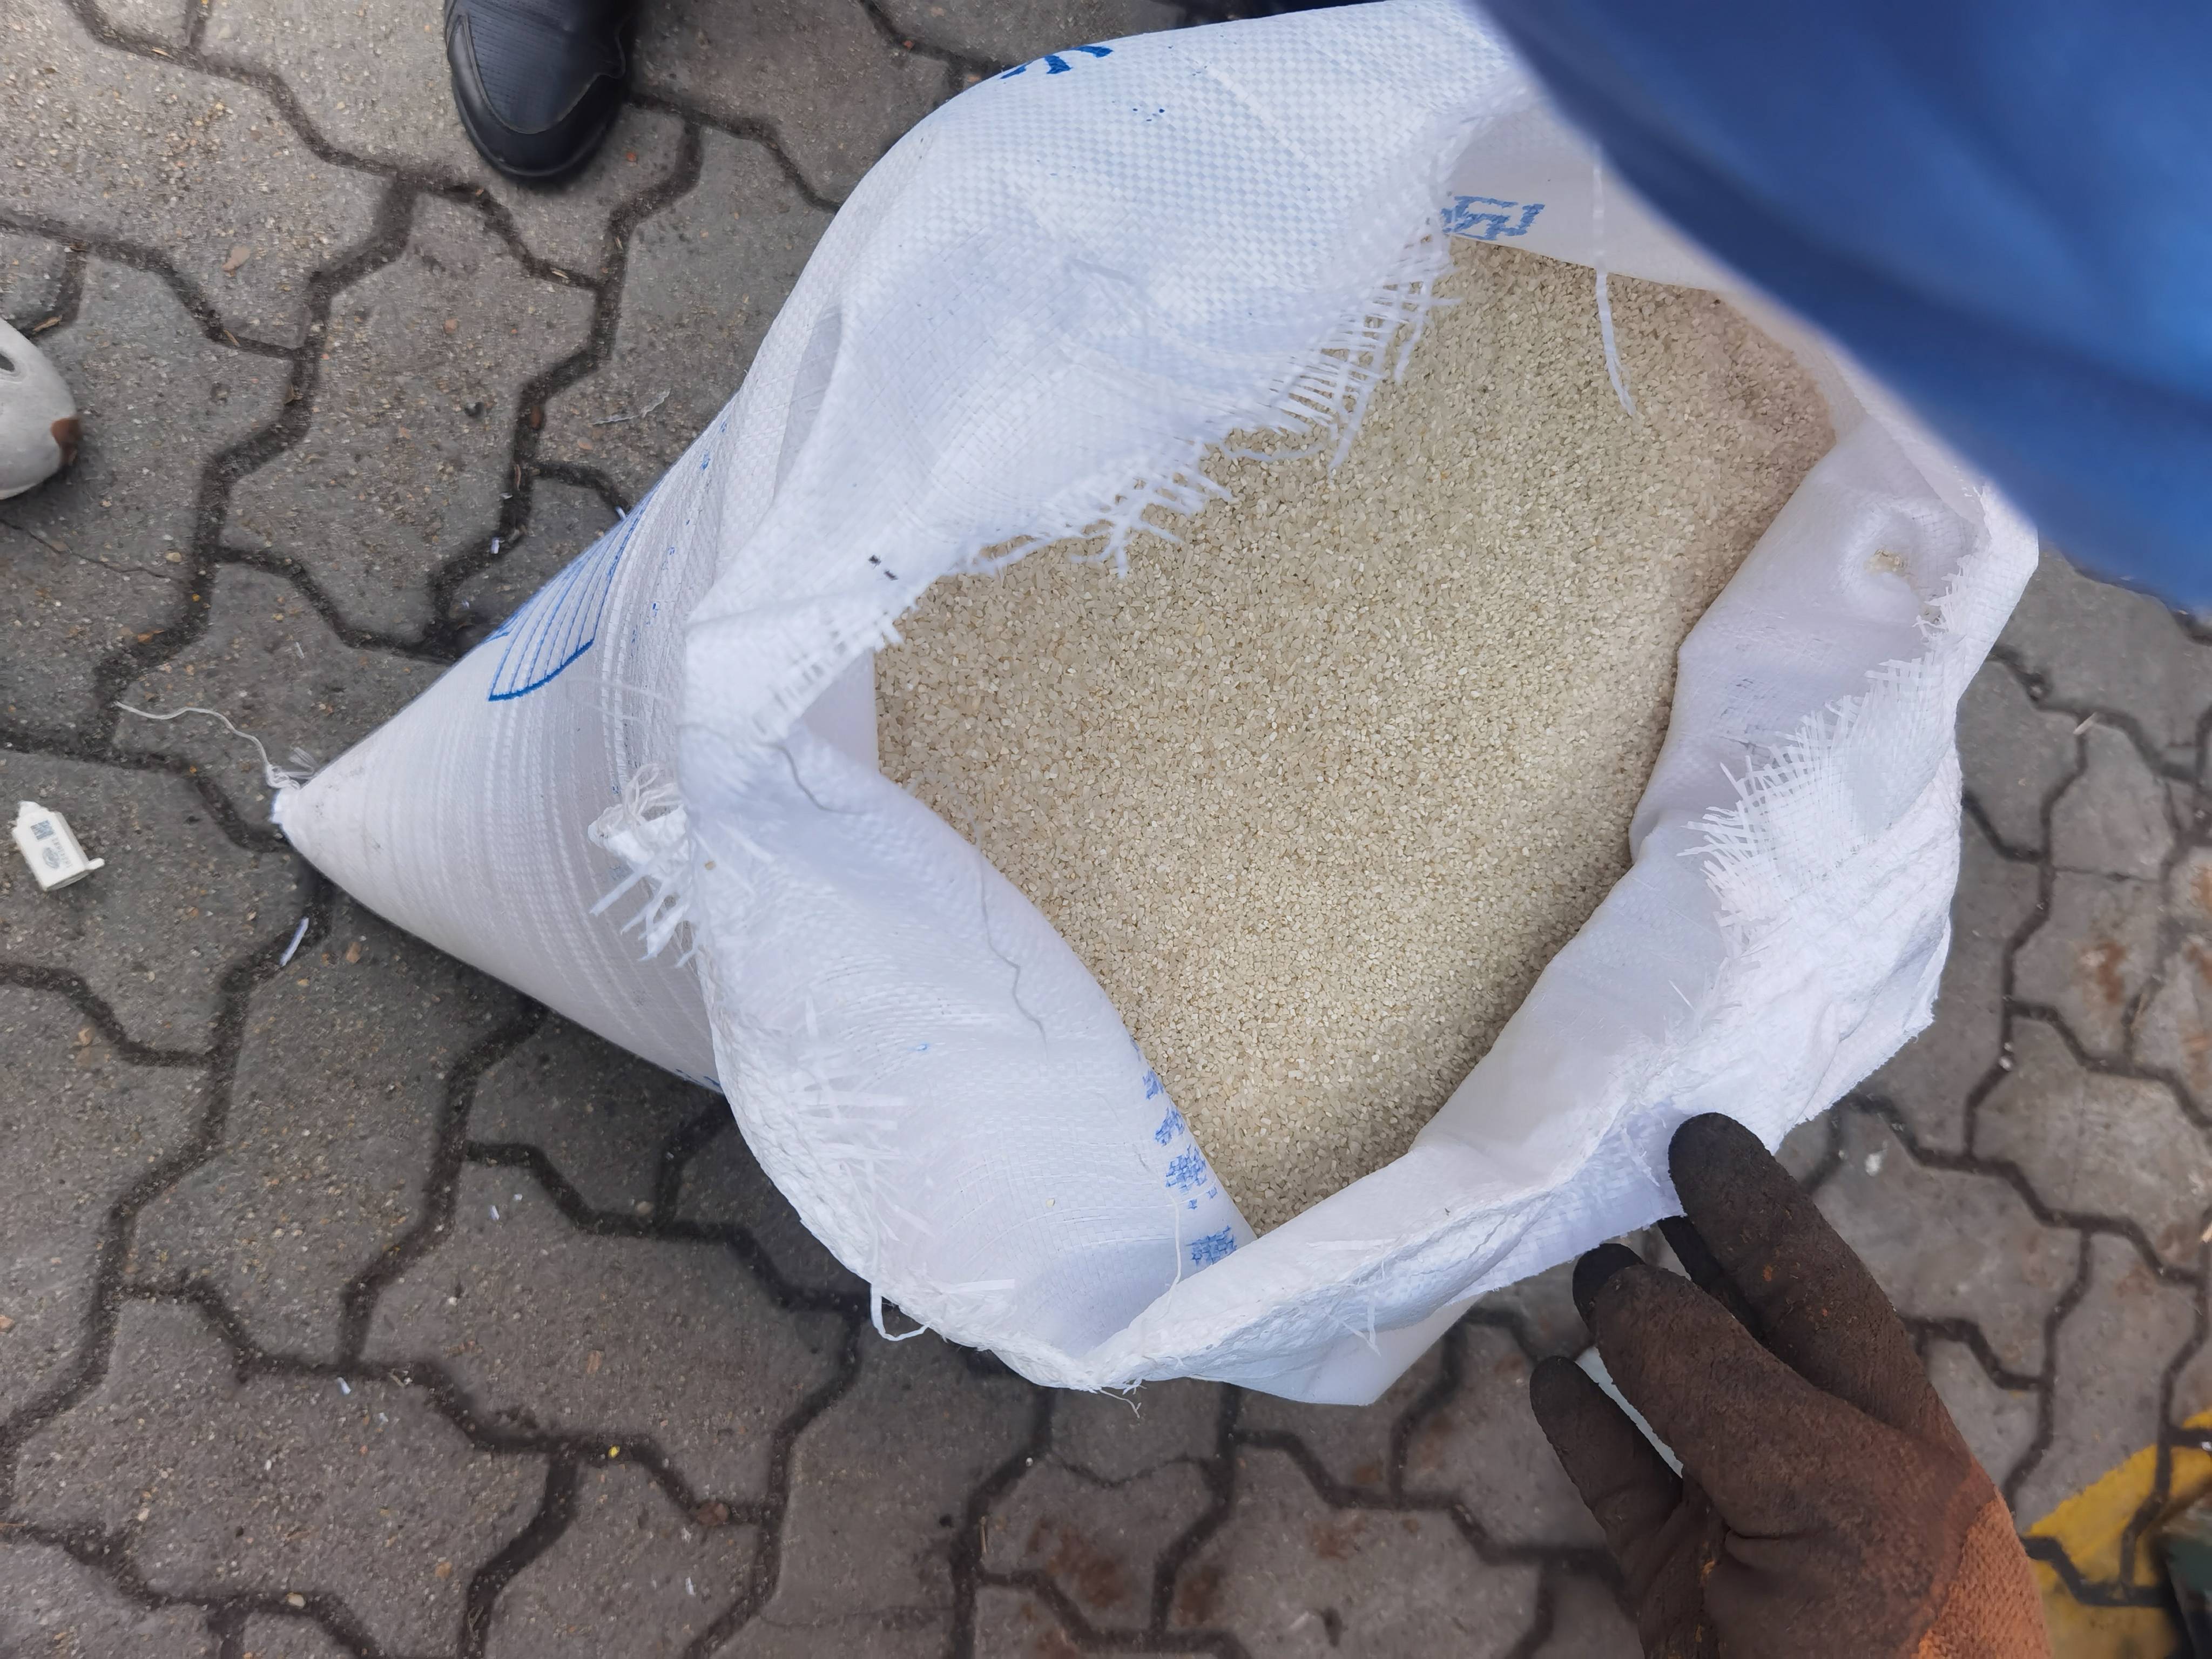 巴基斯坦碎米介绍图片